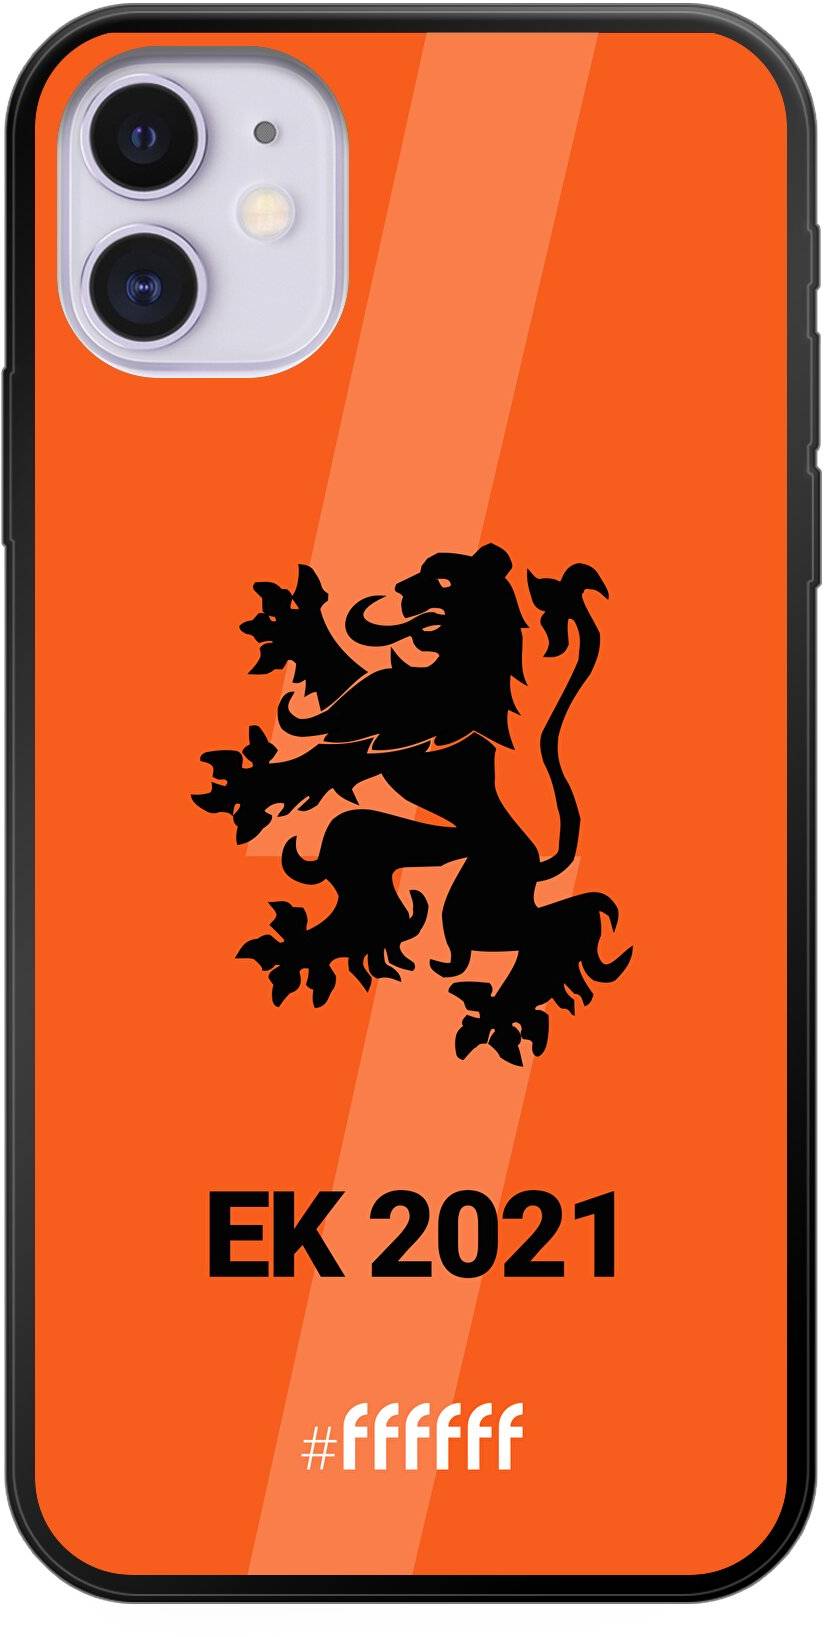 Nederlands Elftal - EK 2021 iPhone 11